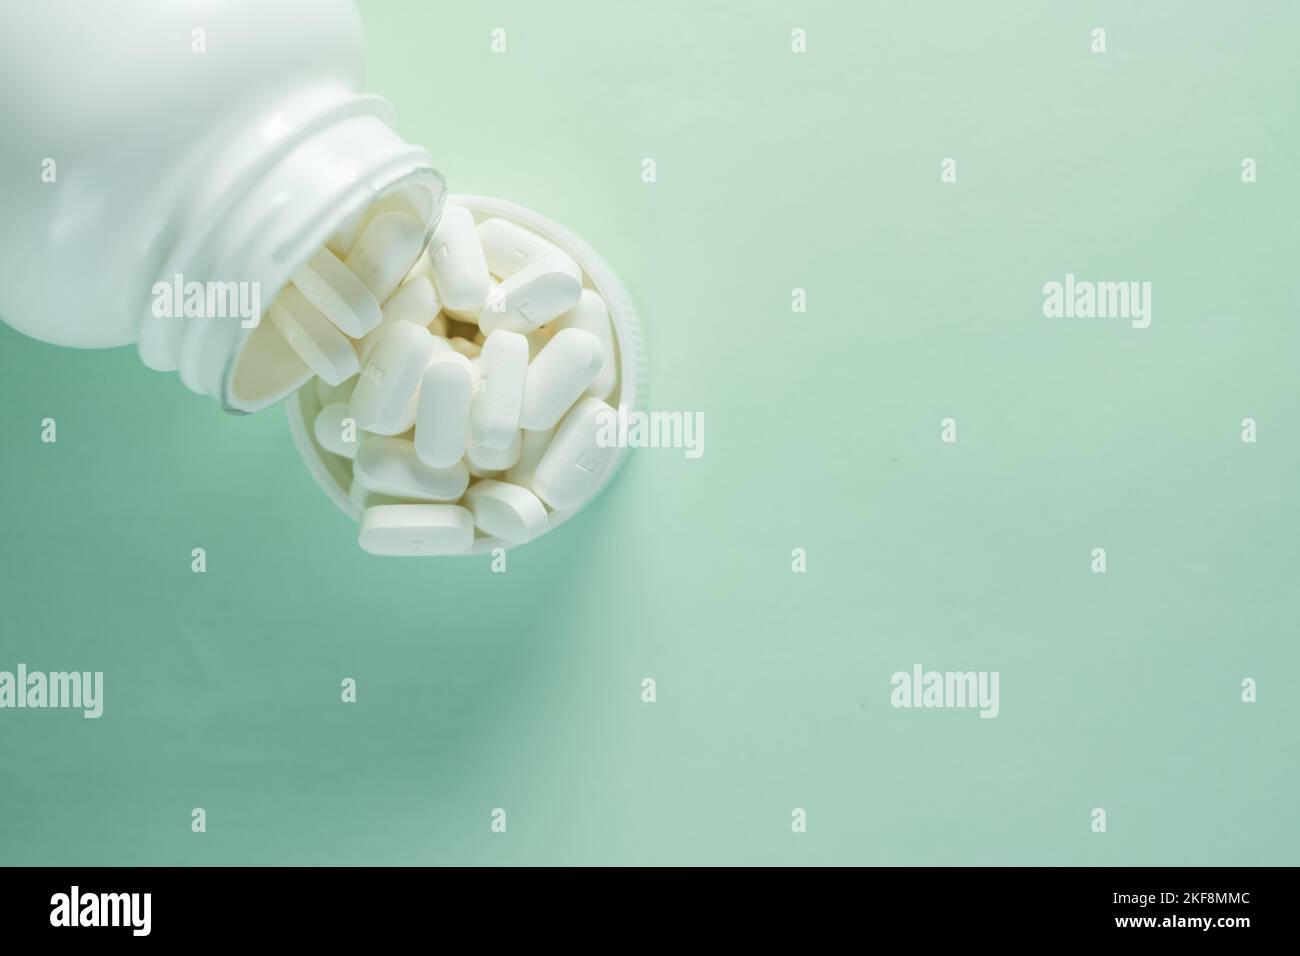 Eine Medikamentenflasche und eine Kappe gefüllt mit Pillen auf grünem Hintergrund - Konzept von Gesundheit und Behandlung Stockfoto